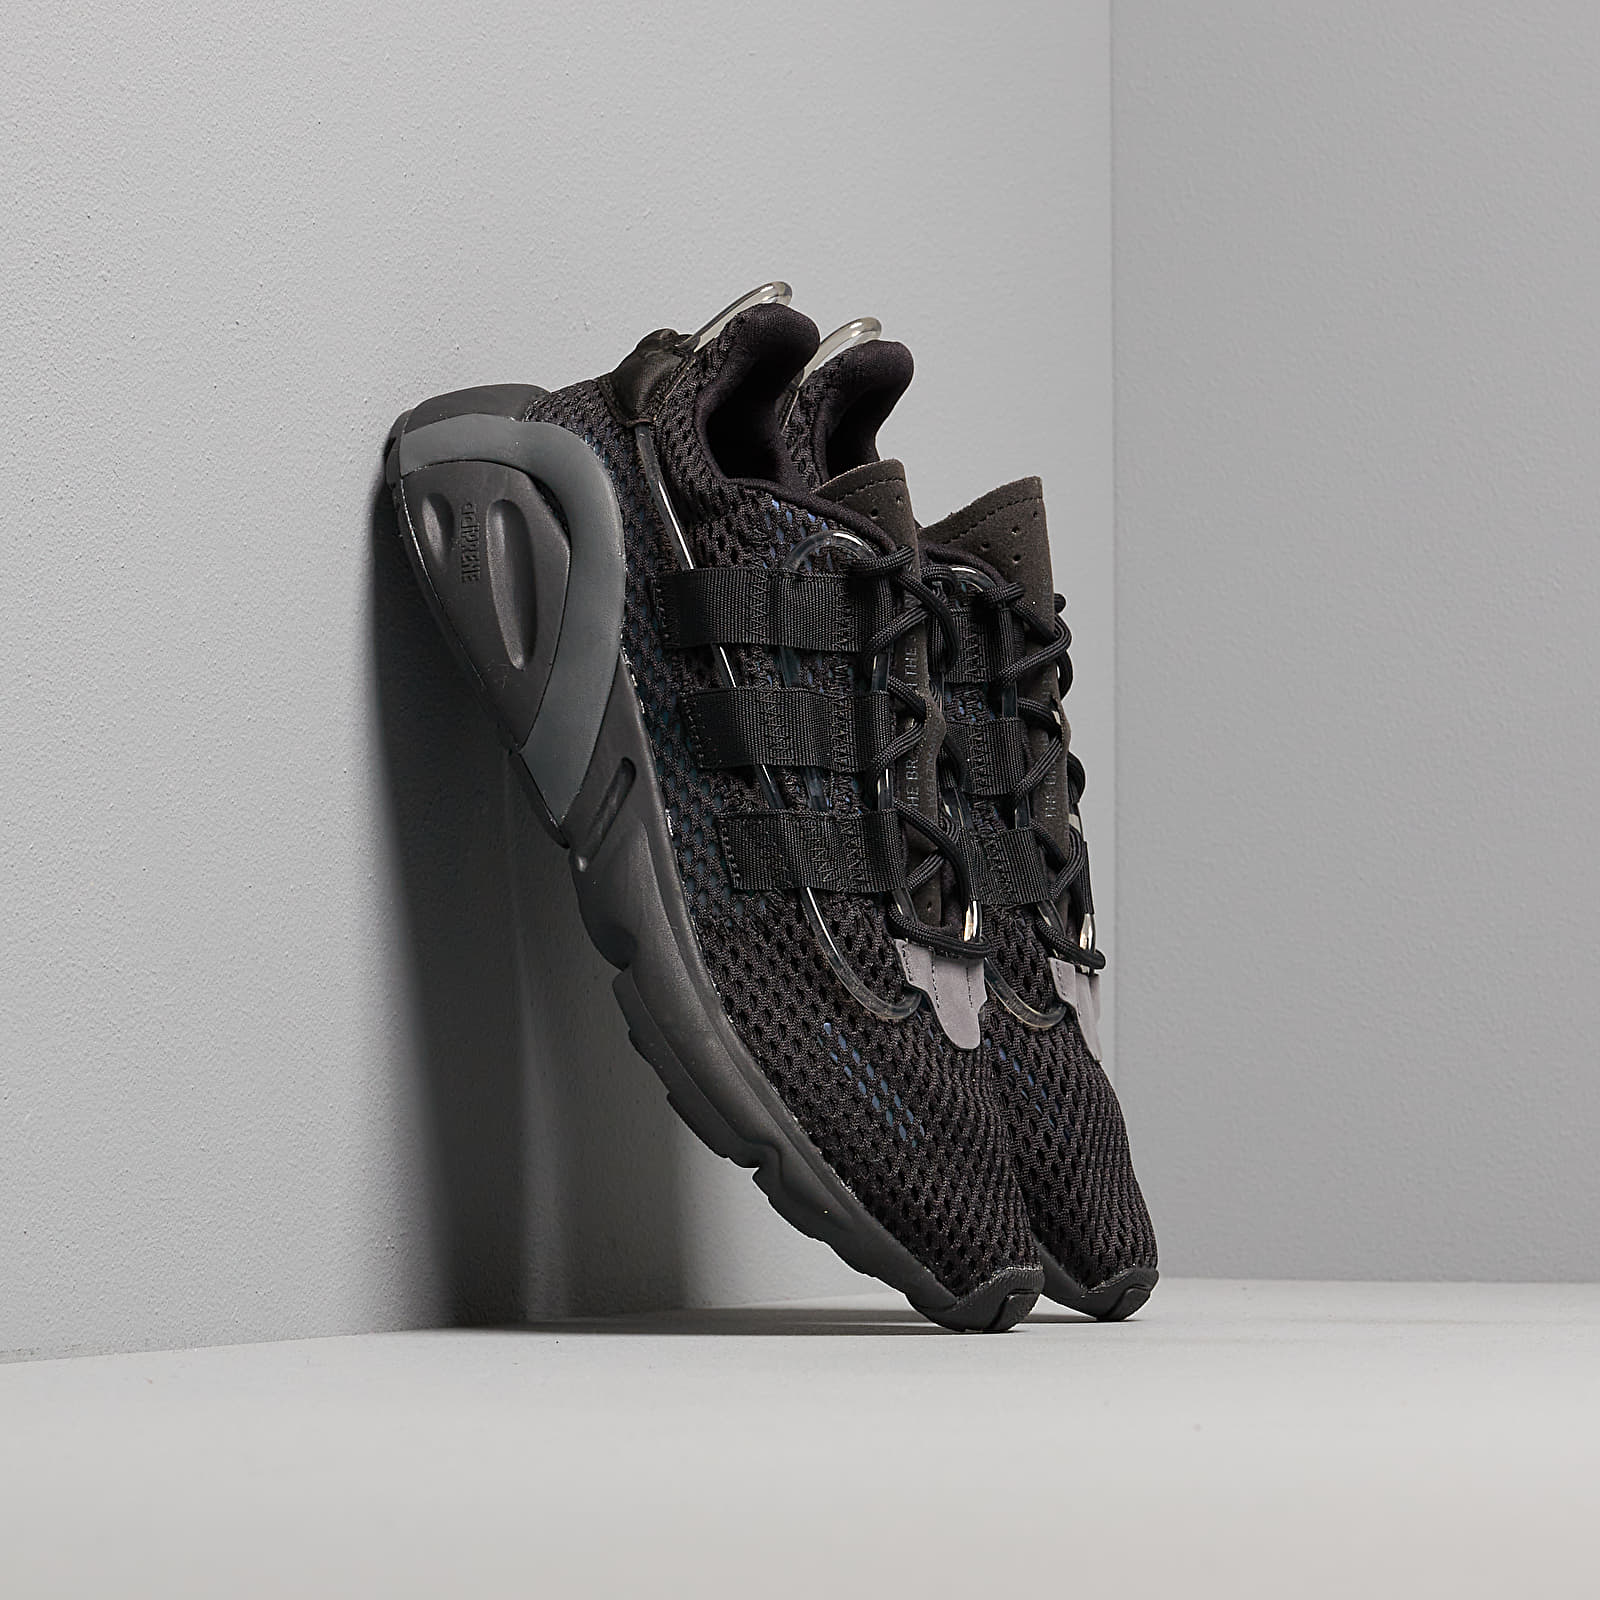 Chaussures et baskets homme adidas LXCON Core Black/ Core Black/ Grey Six